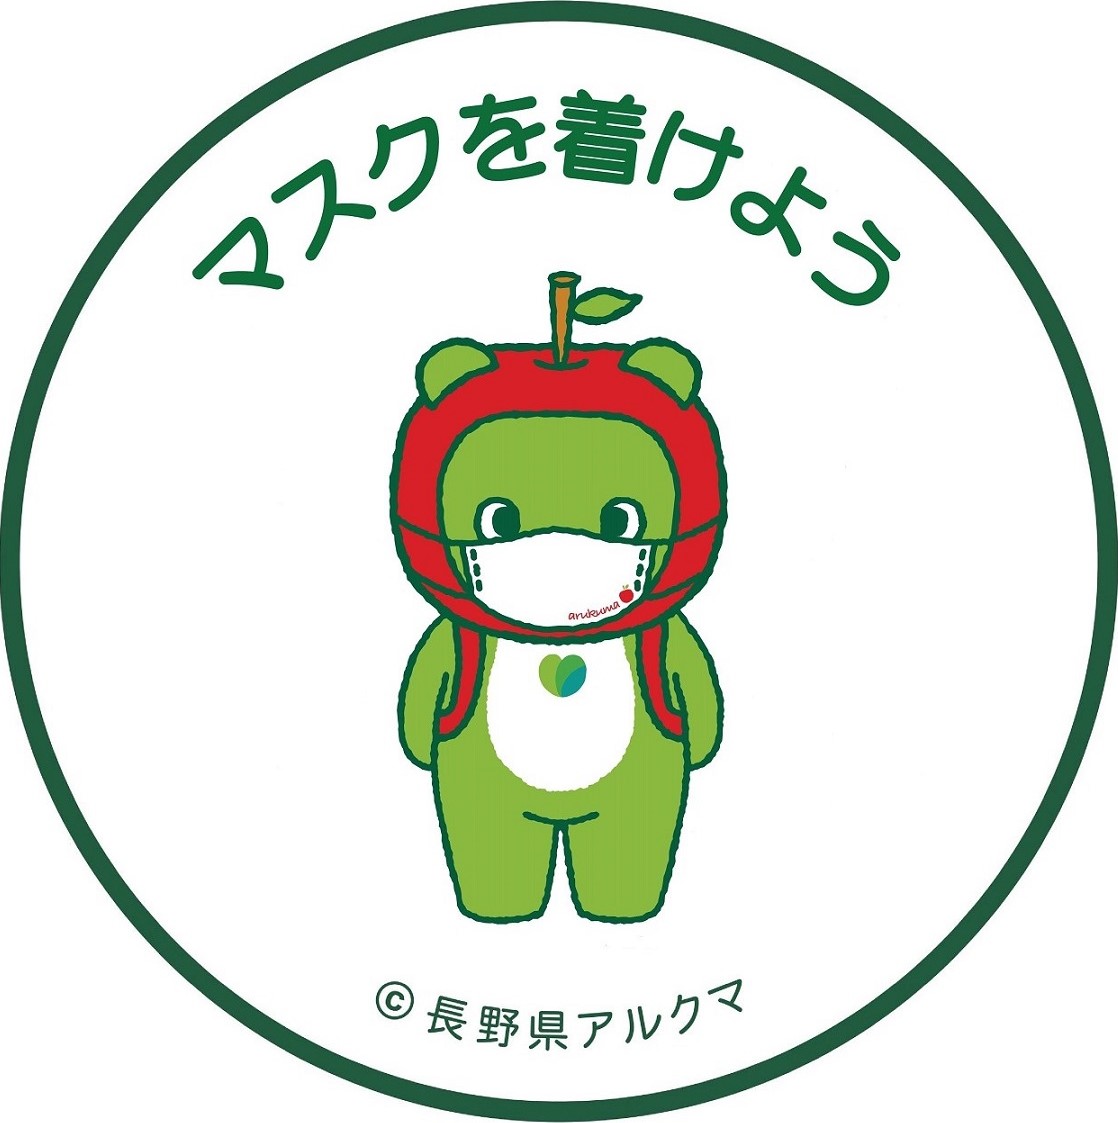 長野県prキャラクター アルクマ フリーデザインについて 長野県